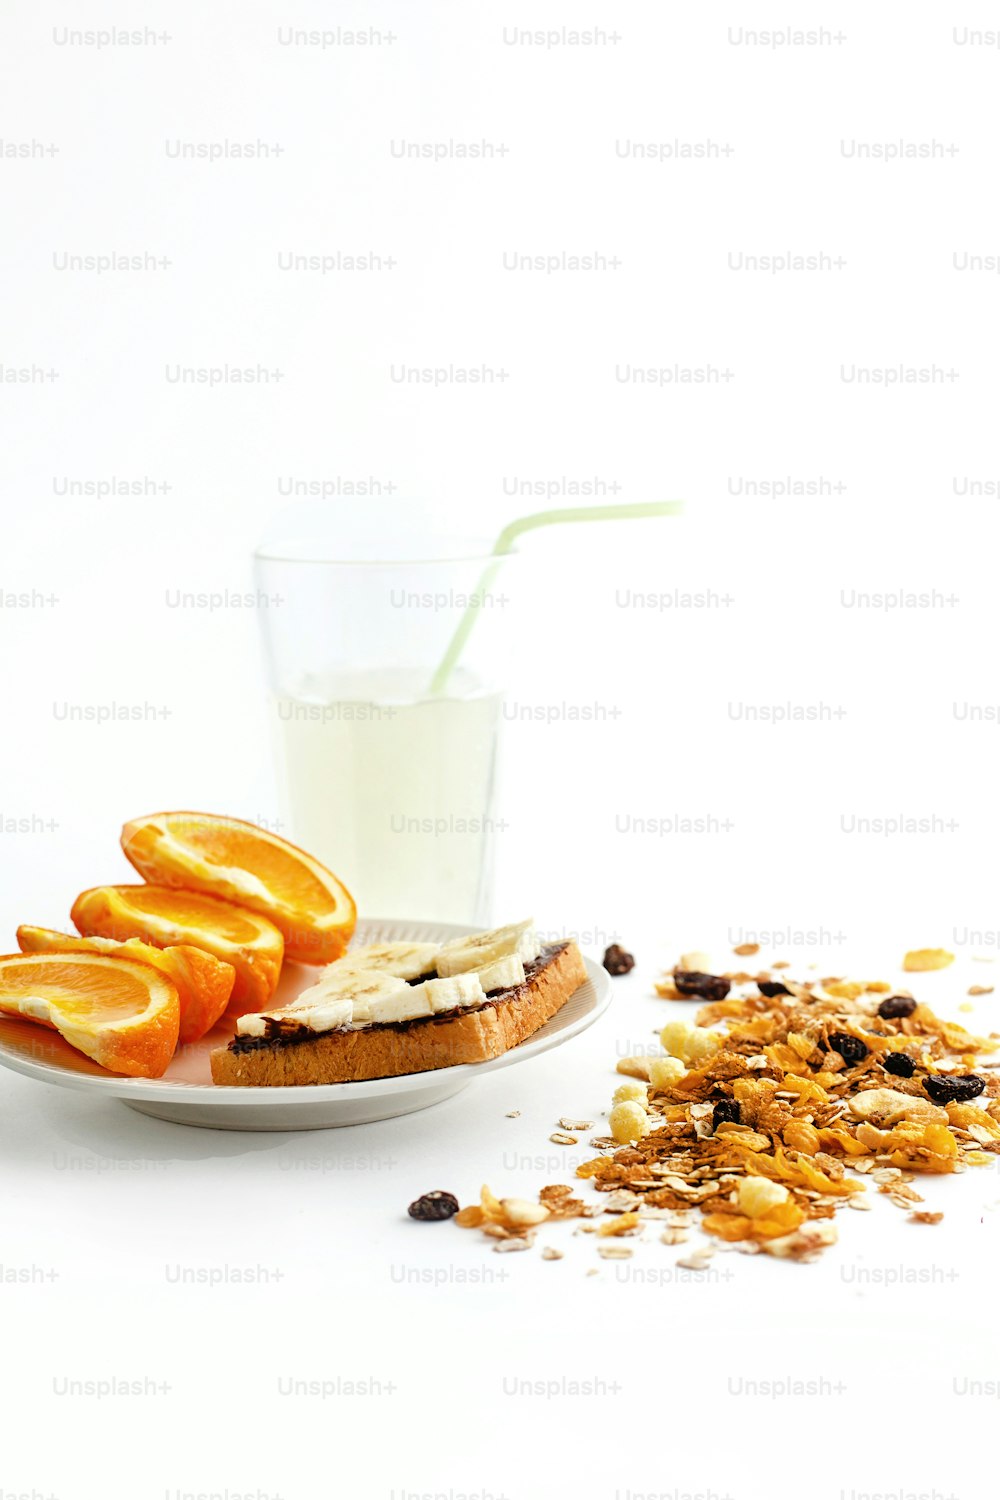 Délicieuses oranges juteuses et banane sur pain avec chocolat et boisson fraîche et granola sur fond blanc, concept d’alimentation saine